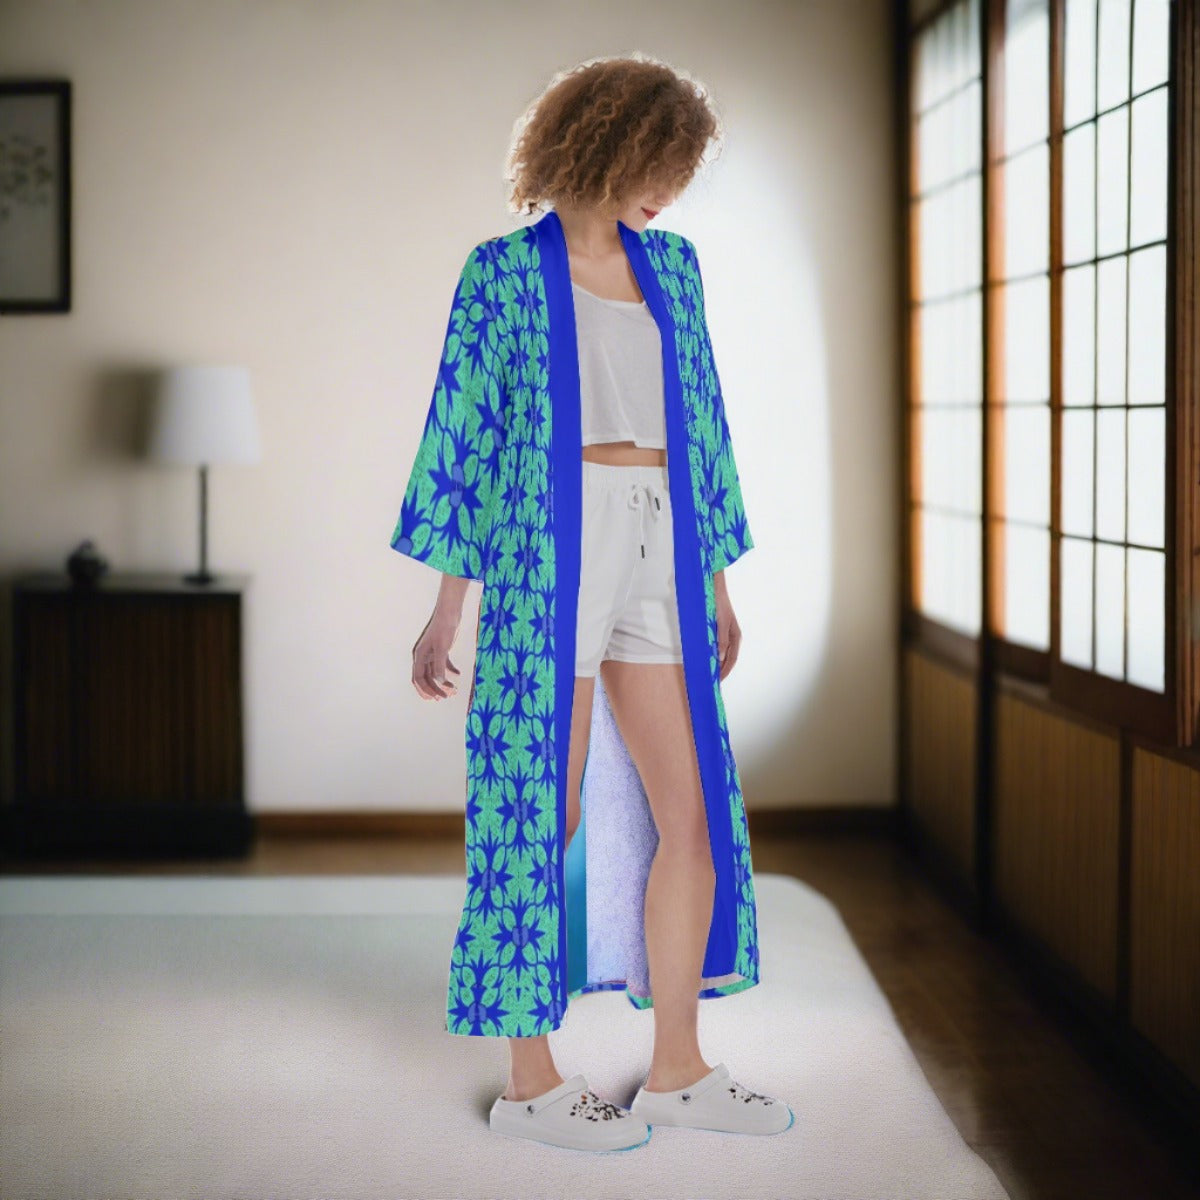 Renaissance Mint Women's Satin Kimono Long Robe